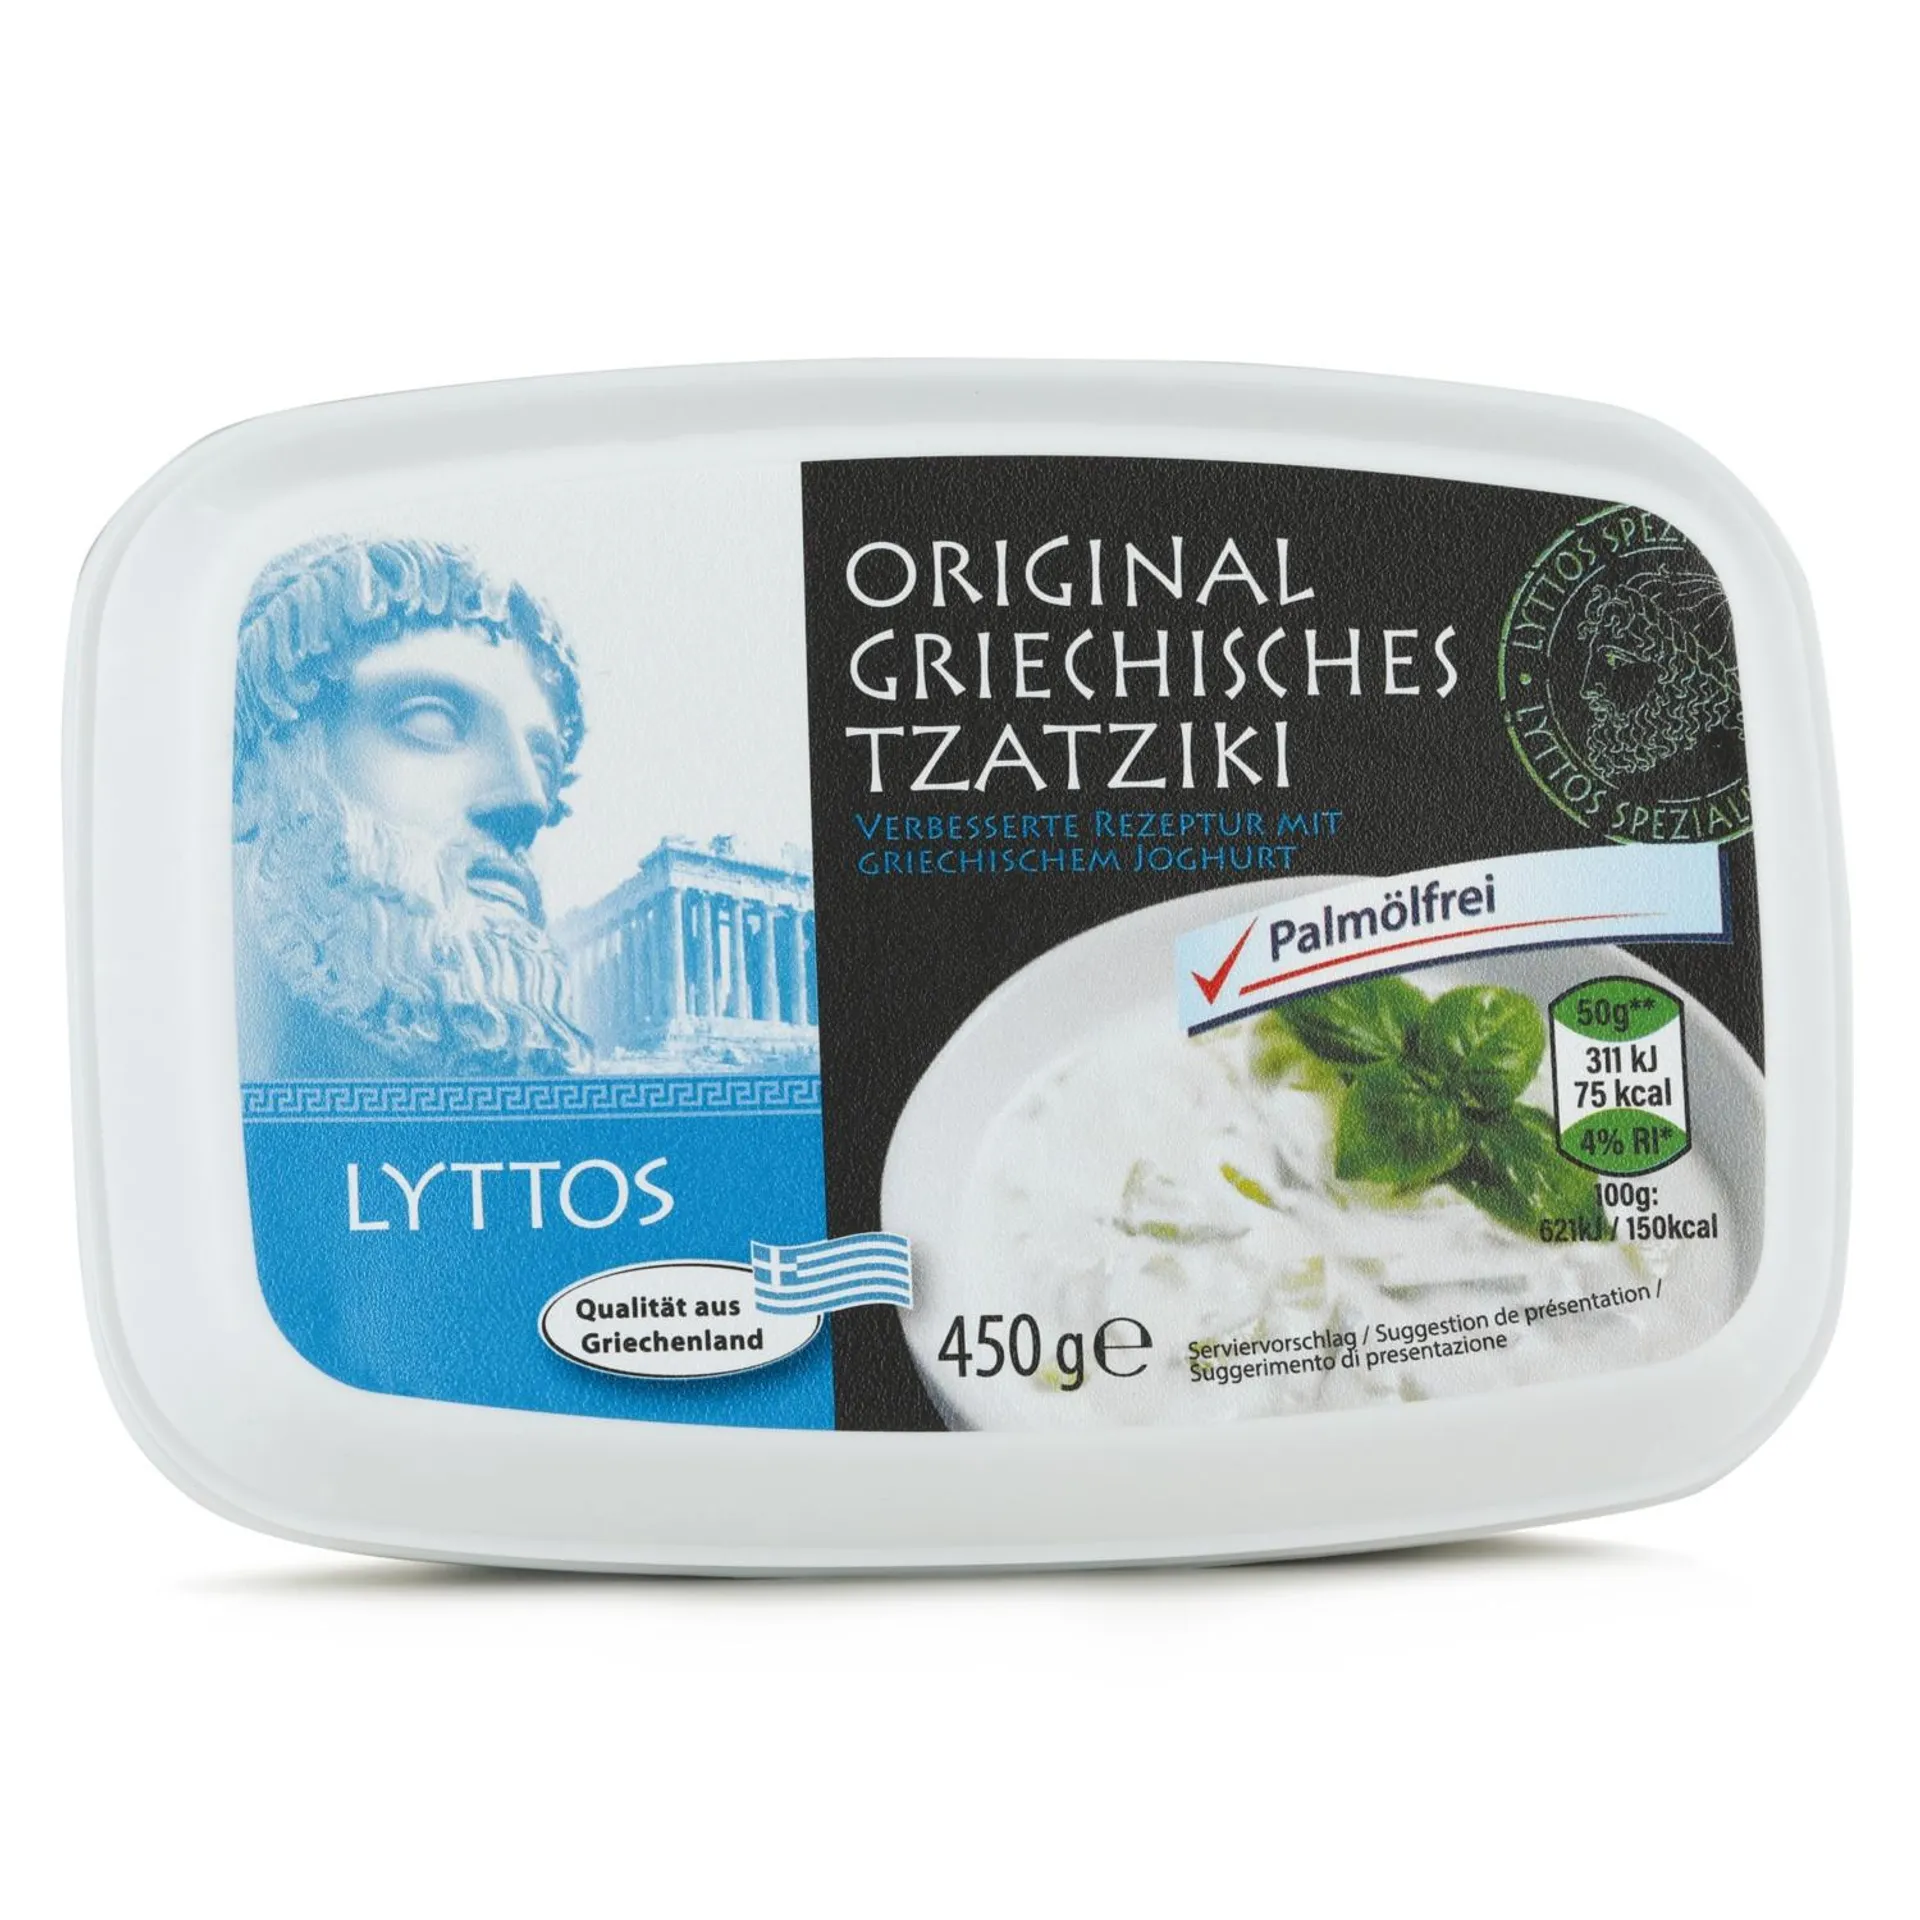 LYTTOS Original griechisches Tzatziki, ohne Palmöl